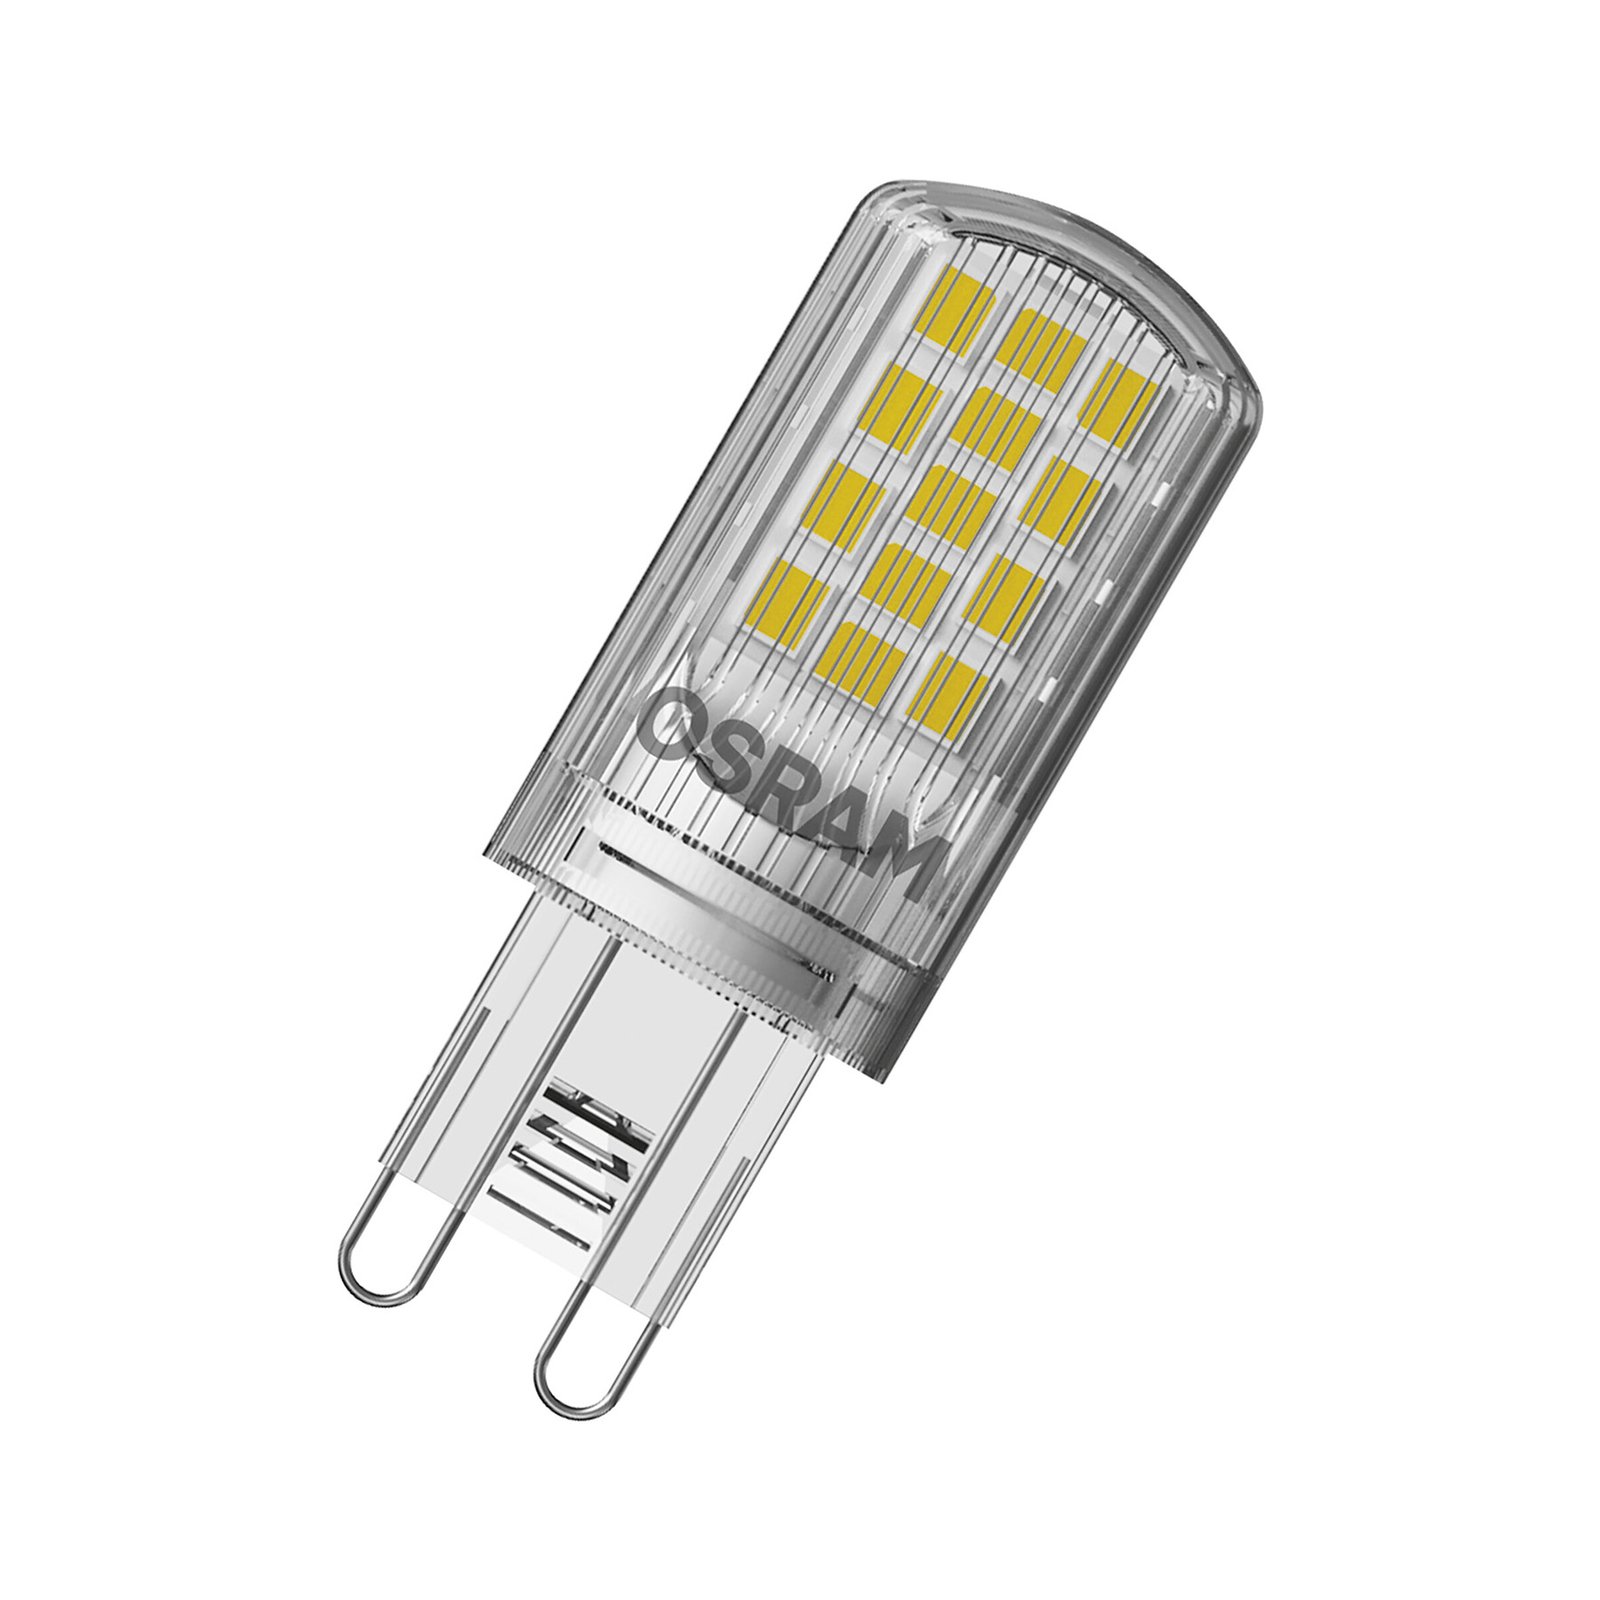 OSRAM Base PIN LED kolík žárovka G9 4,2W 470lm 5ks